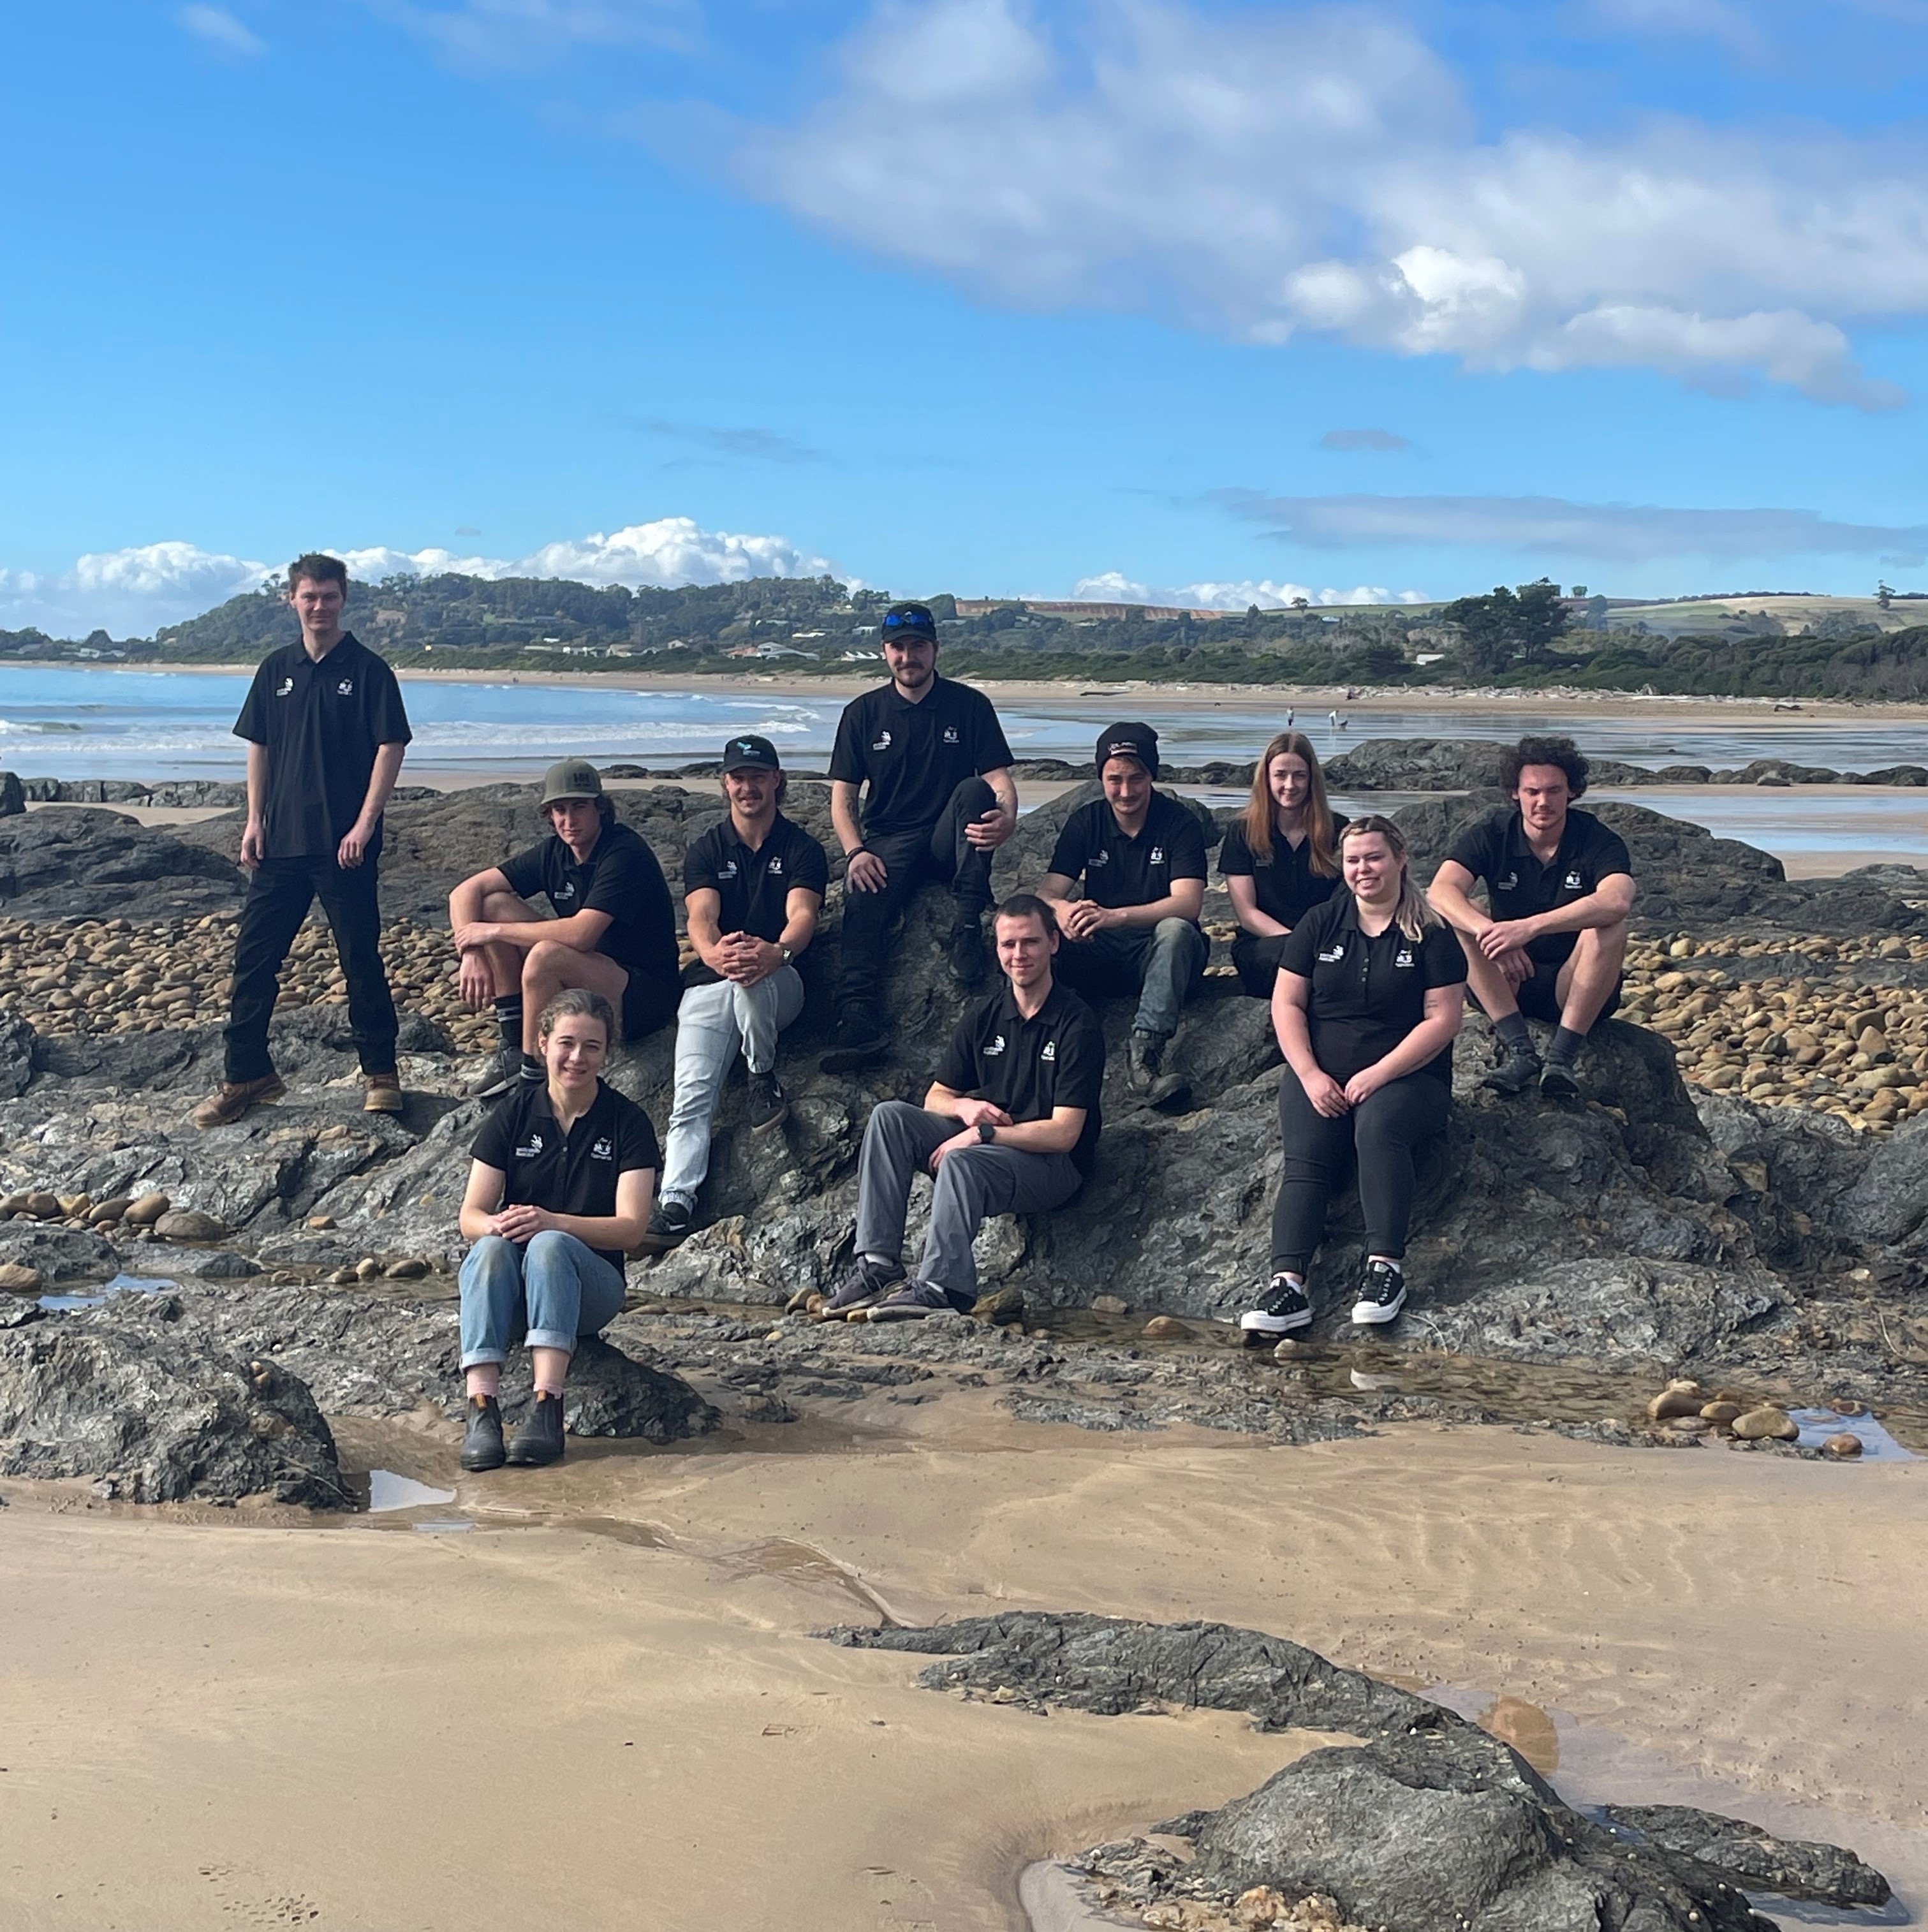 Worldskills Team Tasmania group photo on the beach